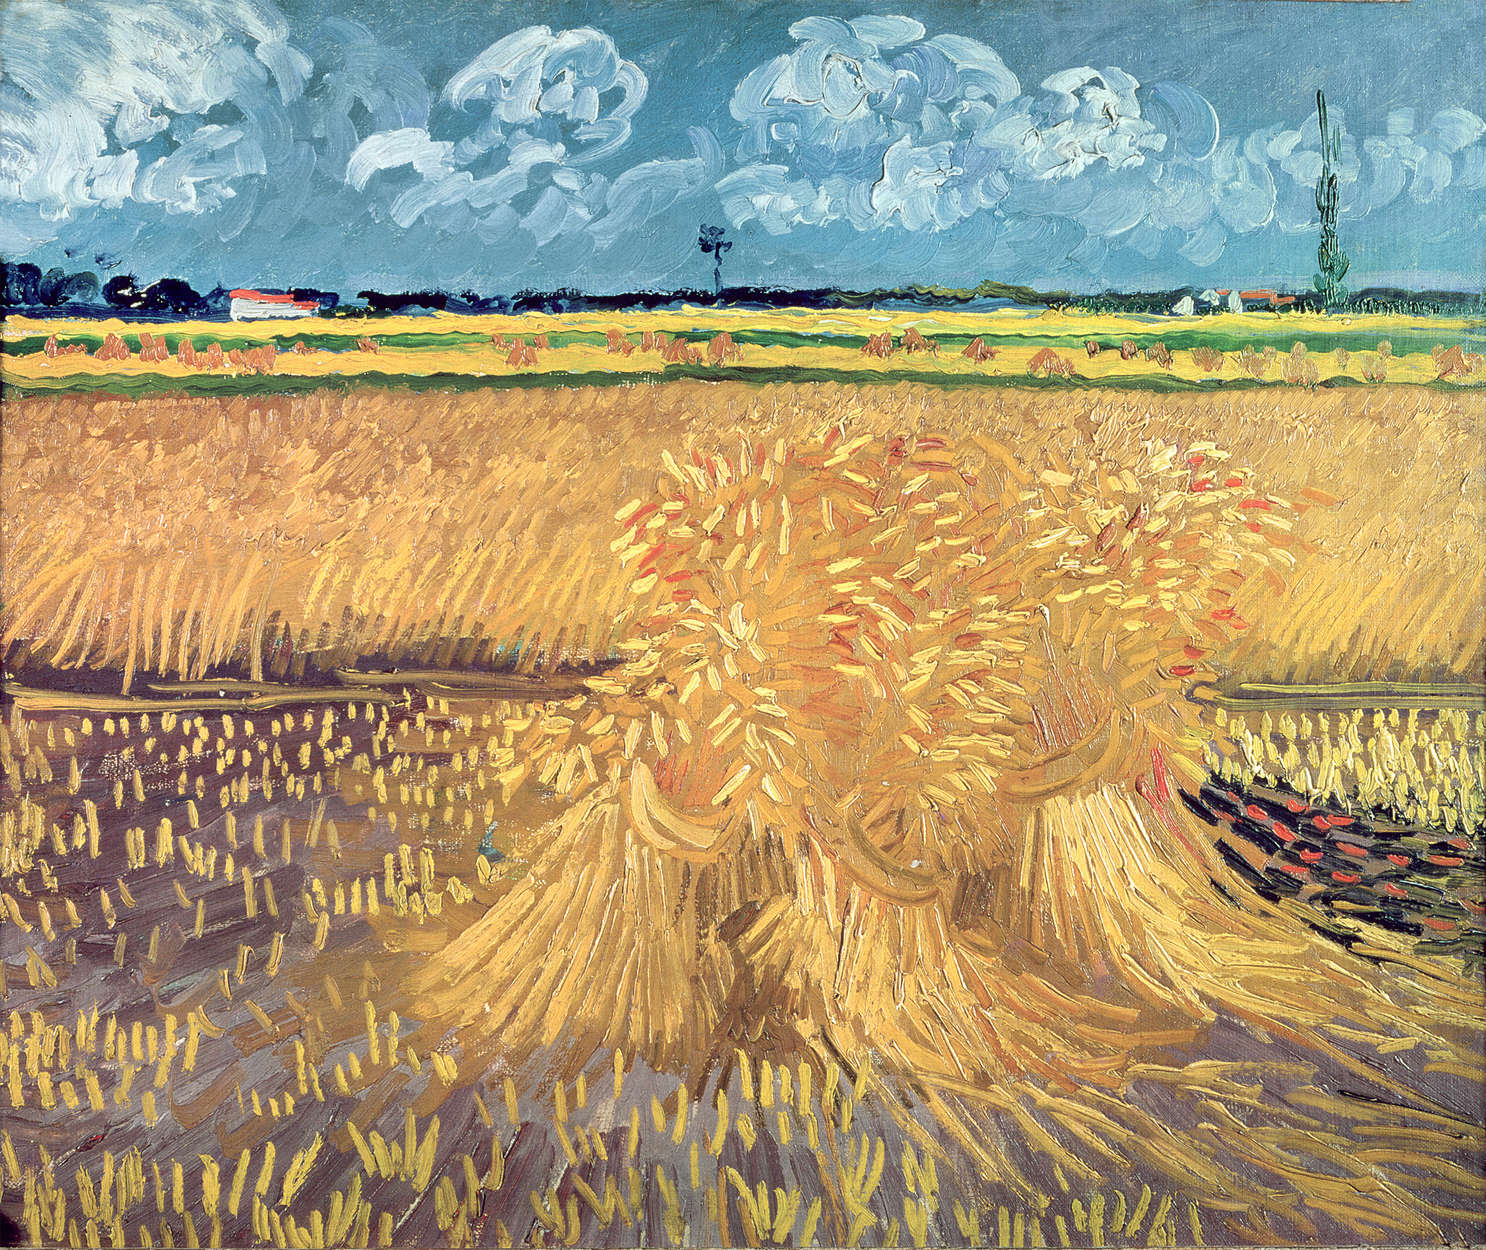             Fototapete "Krähen über Weizenfeld" von Vincent van Gogh
        